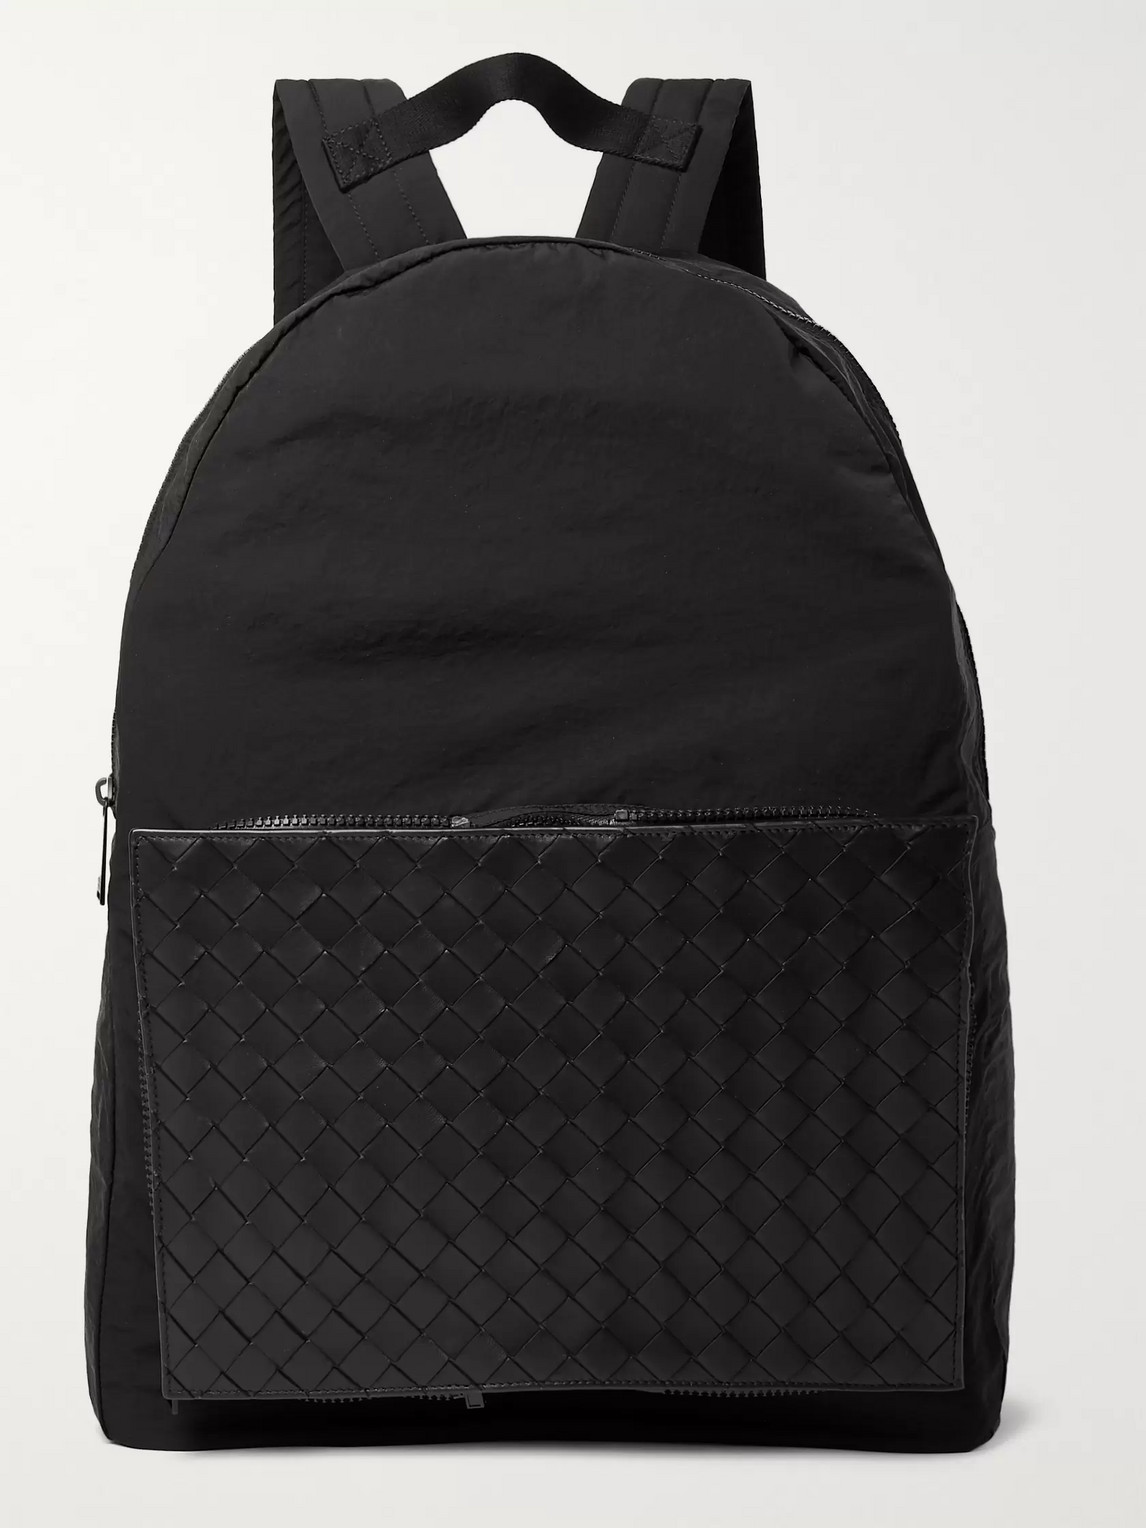 Bottega Veneta Nylon And Intrecciato Leather Backpack In Black